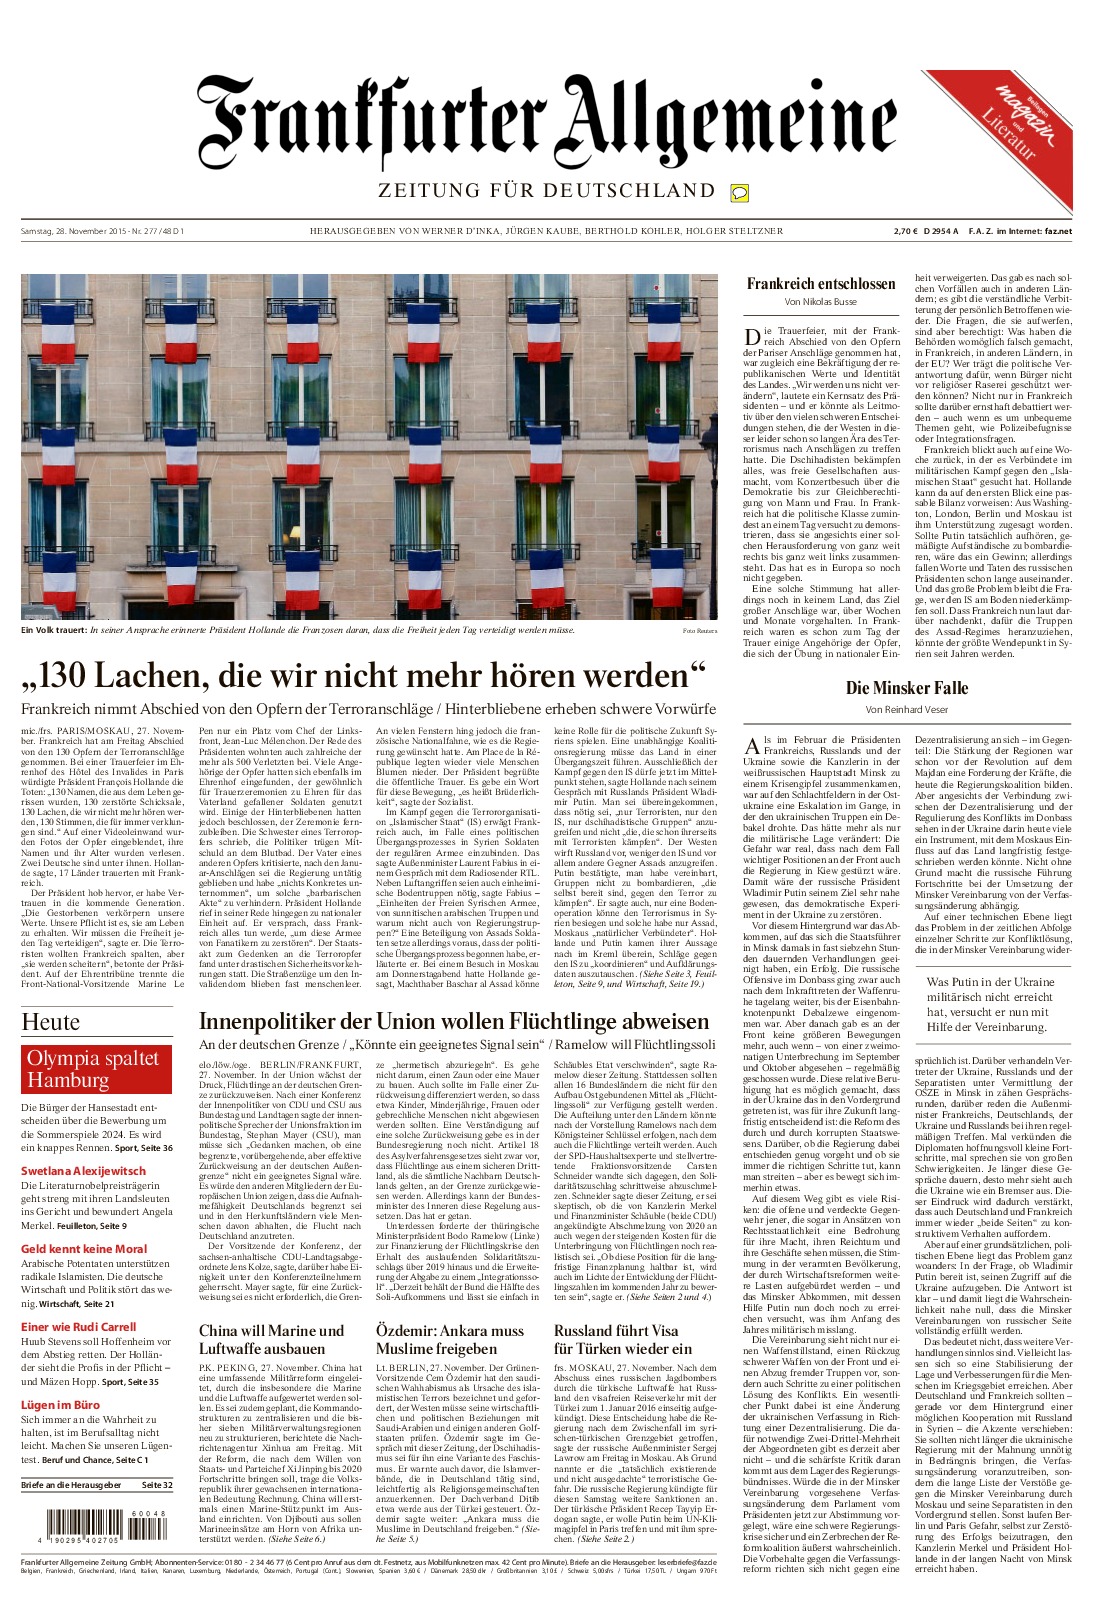 Rattenplage Im Garten Schön Frankfurter Allgemeine Zeitung [546gvd9k97n8]